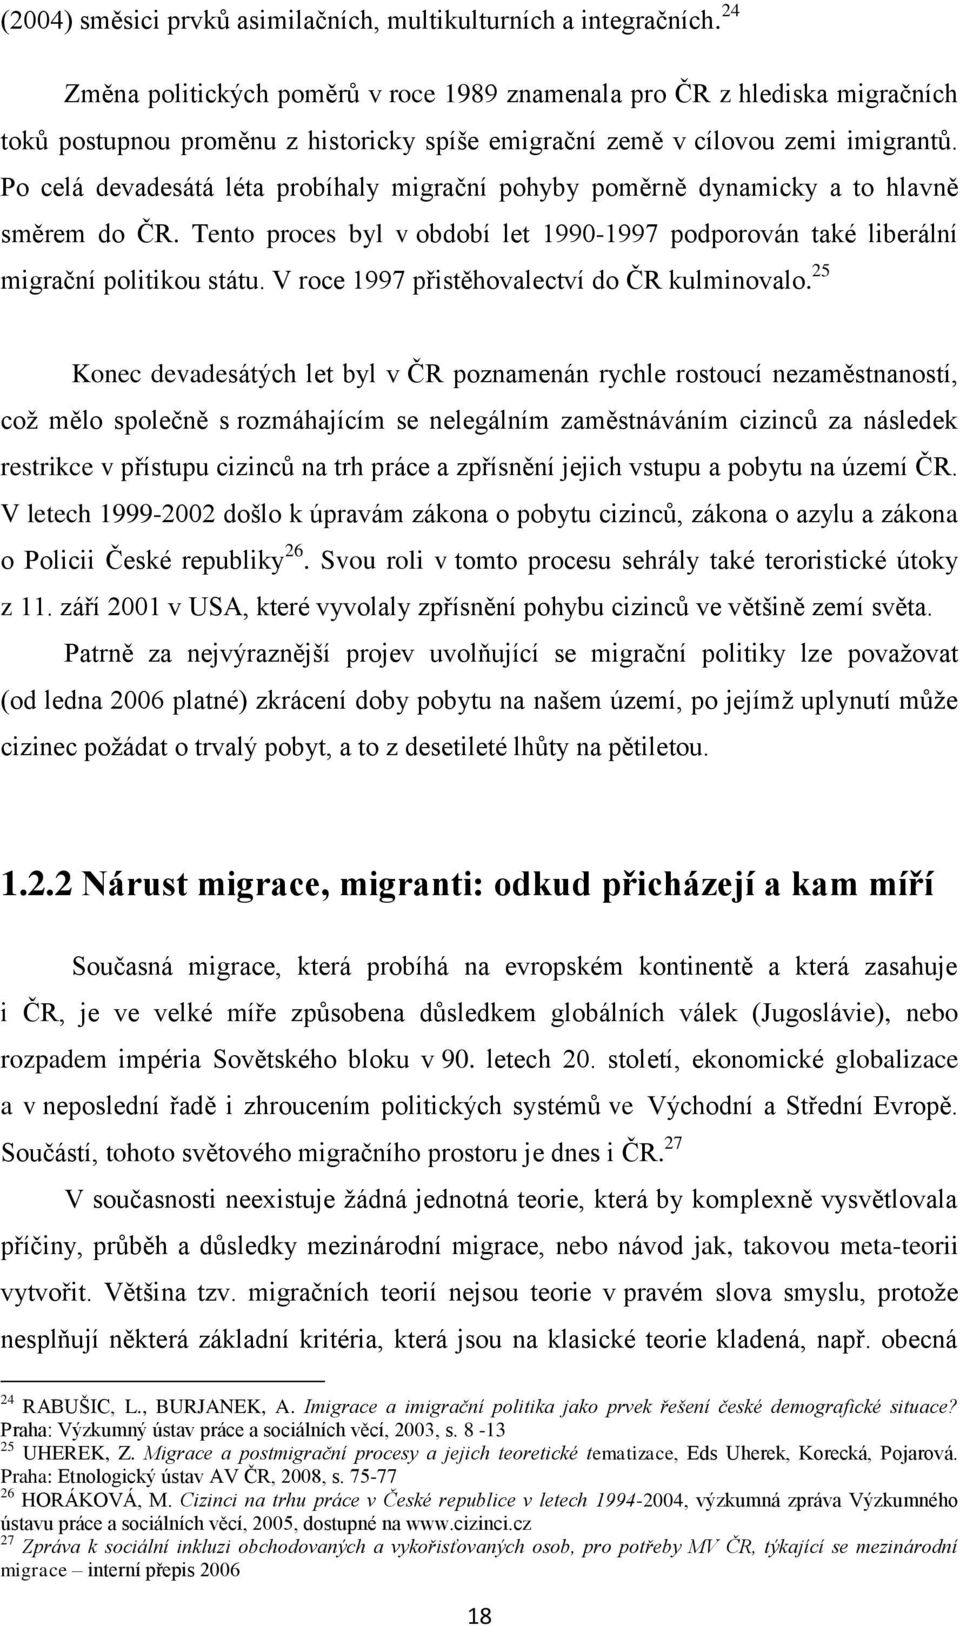 Po celá devadesátá léta probíhaly migrační pohyby poměrně dynamicky a to hlavně směrem do ČR. Tento proces byl v období let 1990-1997 podporován také liberální migrační politikou státu.